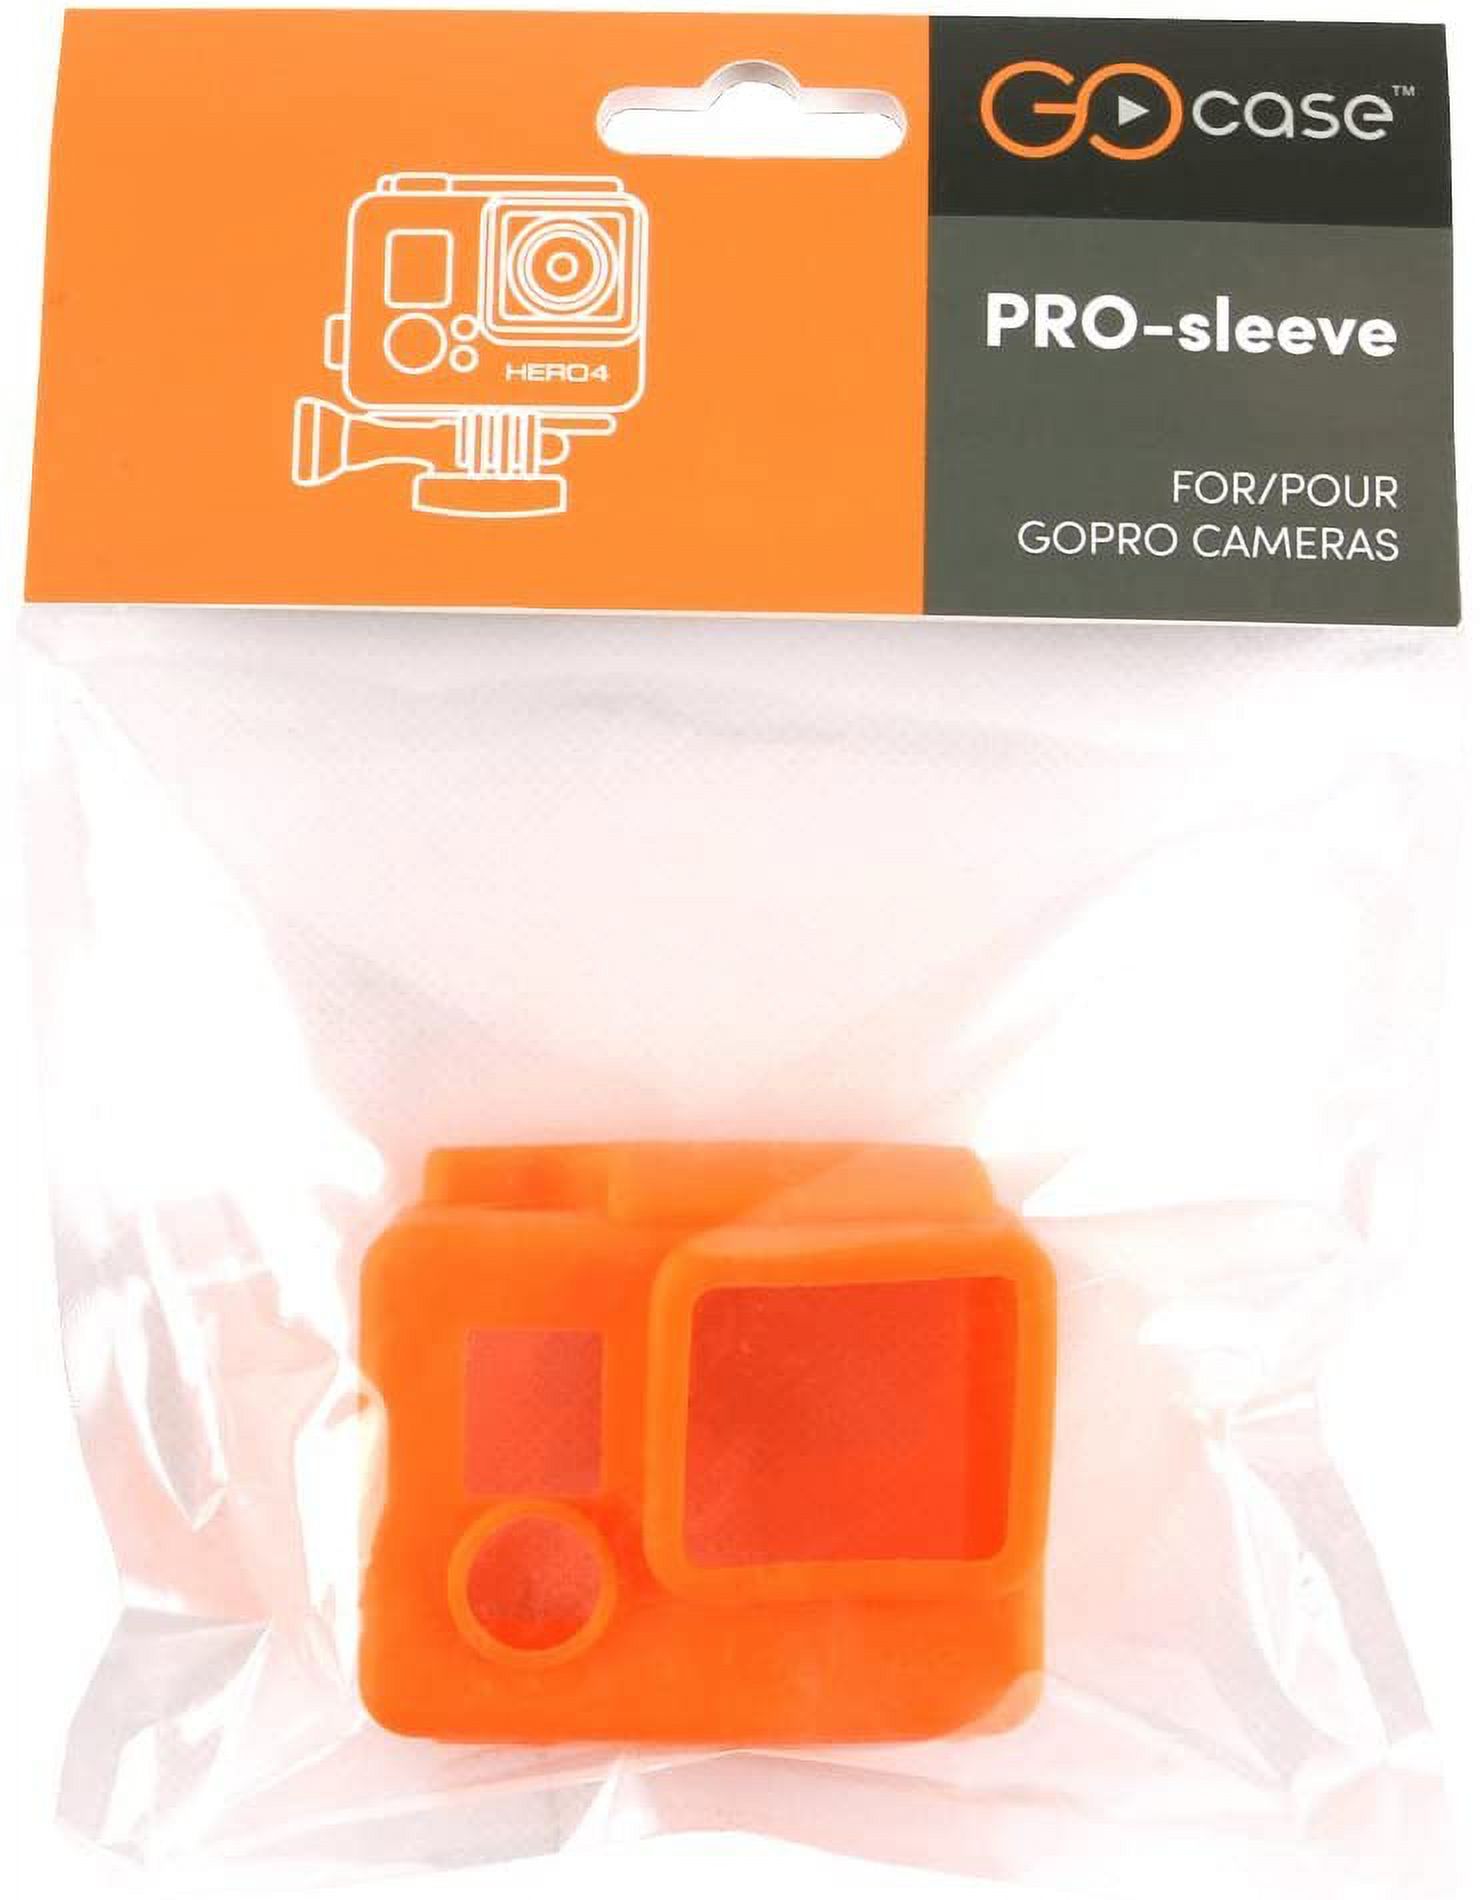 GOcase PRO-SLEEVE for GoPro HERO3+/4 (Orange) - image 3 of 6